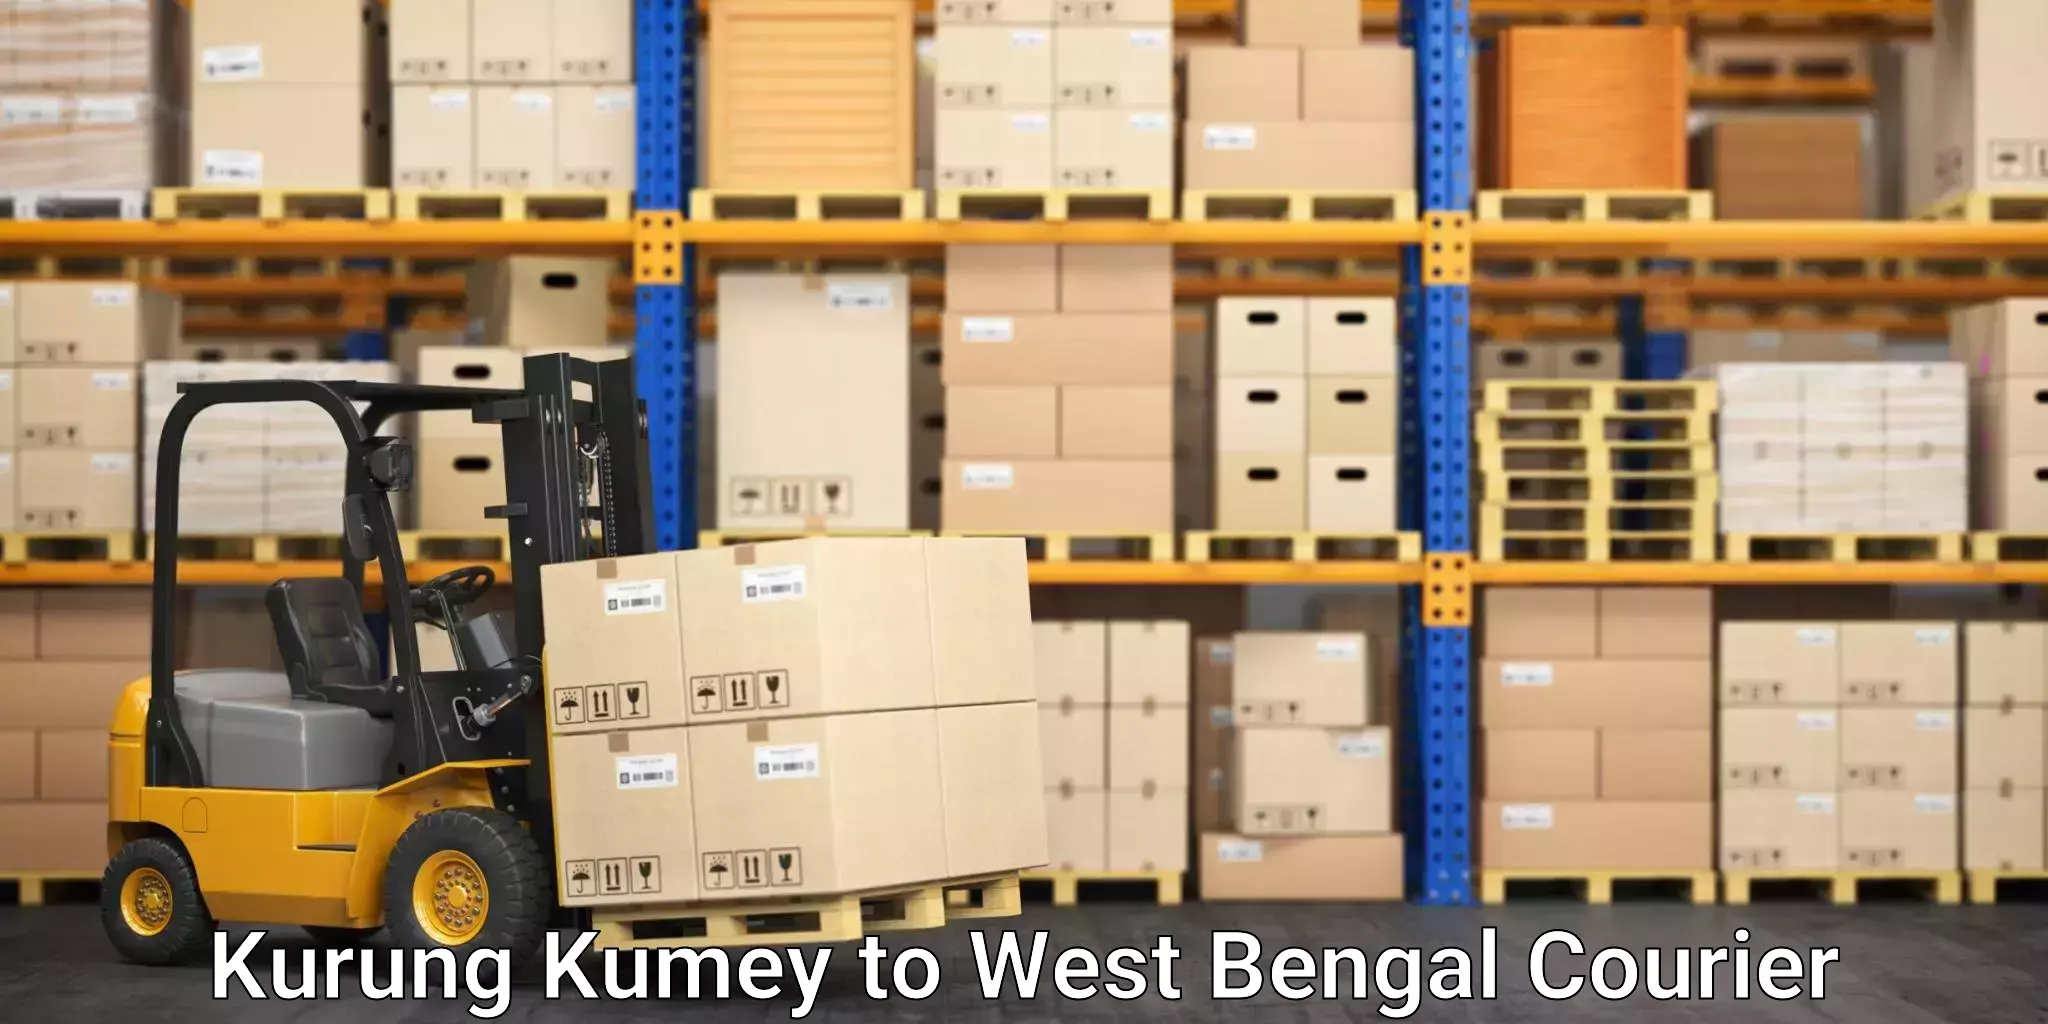 Professional courier handling Kurung Kumey to Visva Bharati Santiniketan